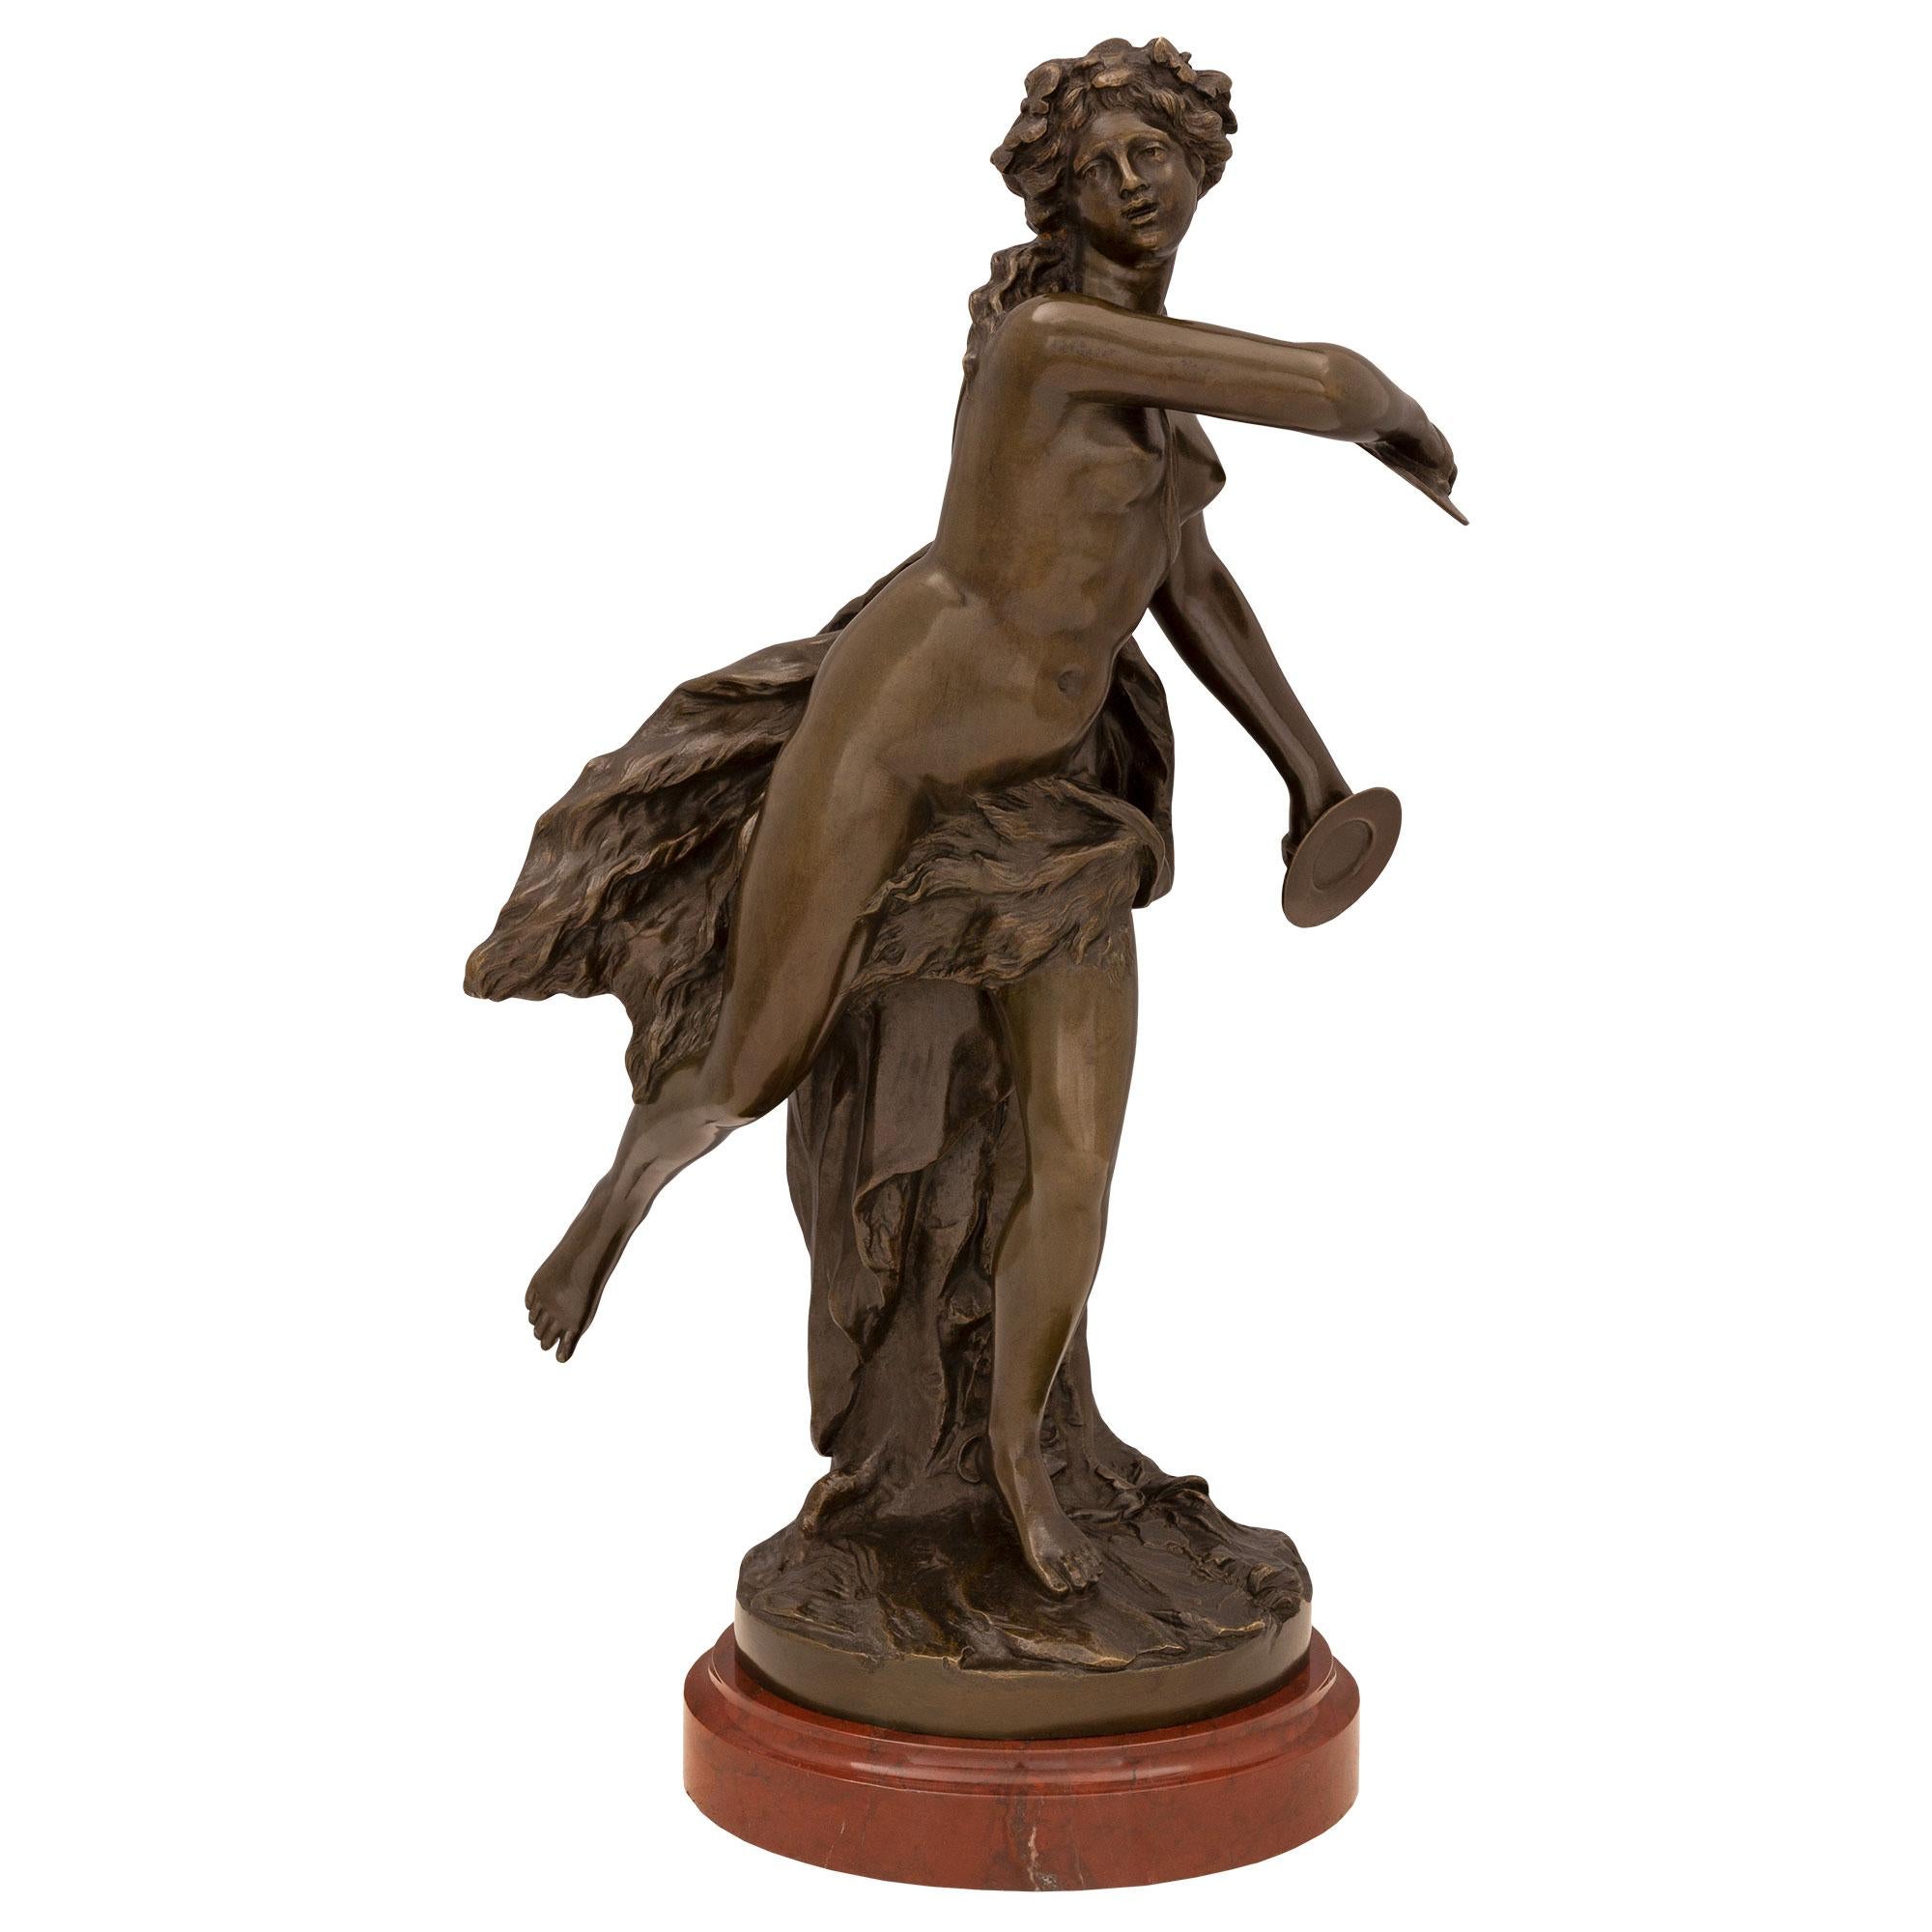 Statue française du XIXe siècle de style Louis XVI représentant une jeune fille dansant avec des cymbales